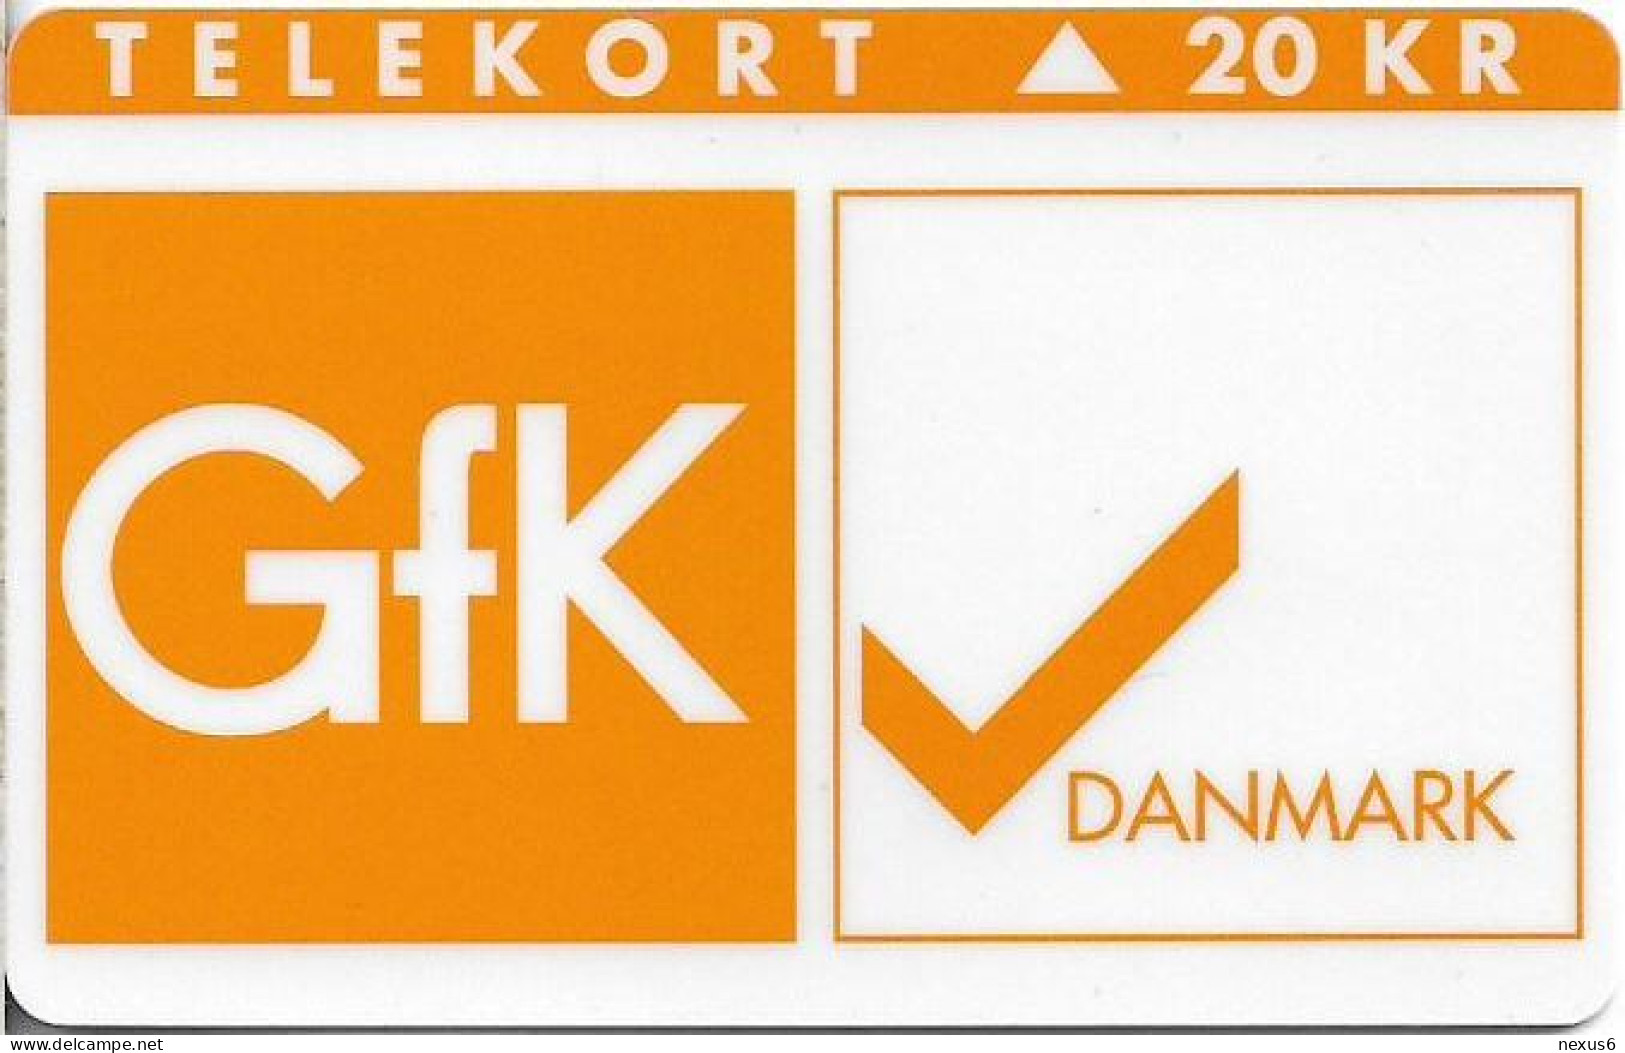 Denmark - KTAS - Gfk Danmark - TDKP134B (Cn. 1050) - 12.1995, 1.300ex, 20kr, Used - Dänemark